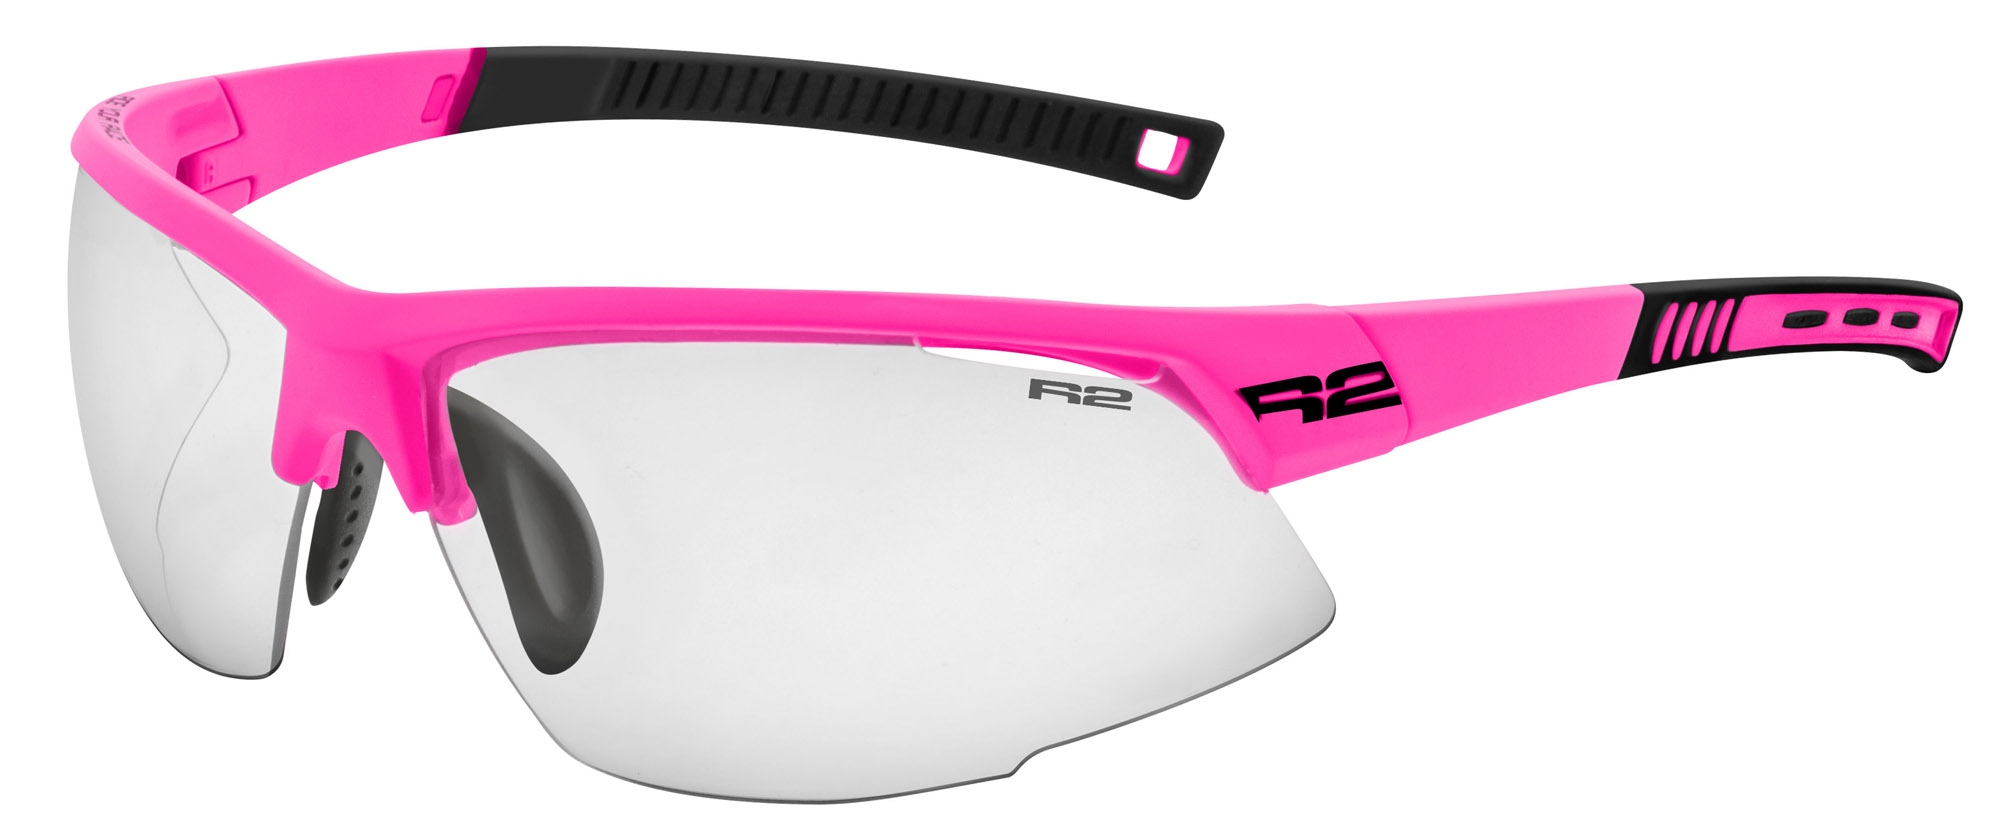 Fotochromatické sluneční brýle R2 RACER AT063P/PH - standard